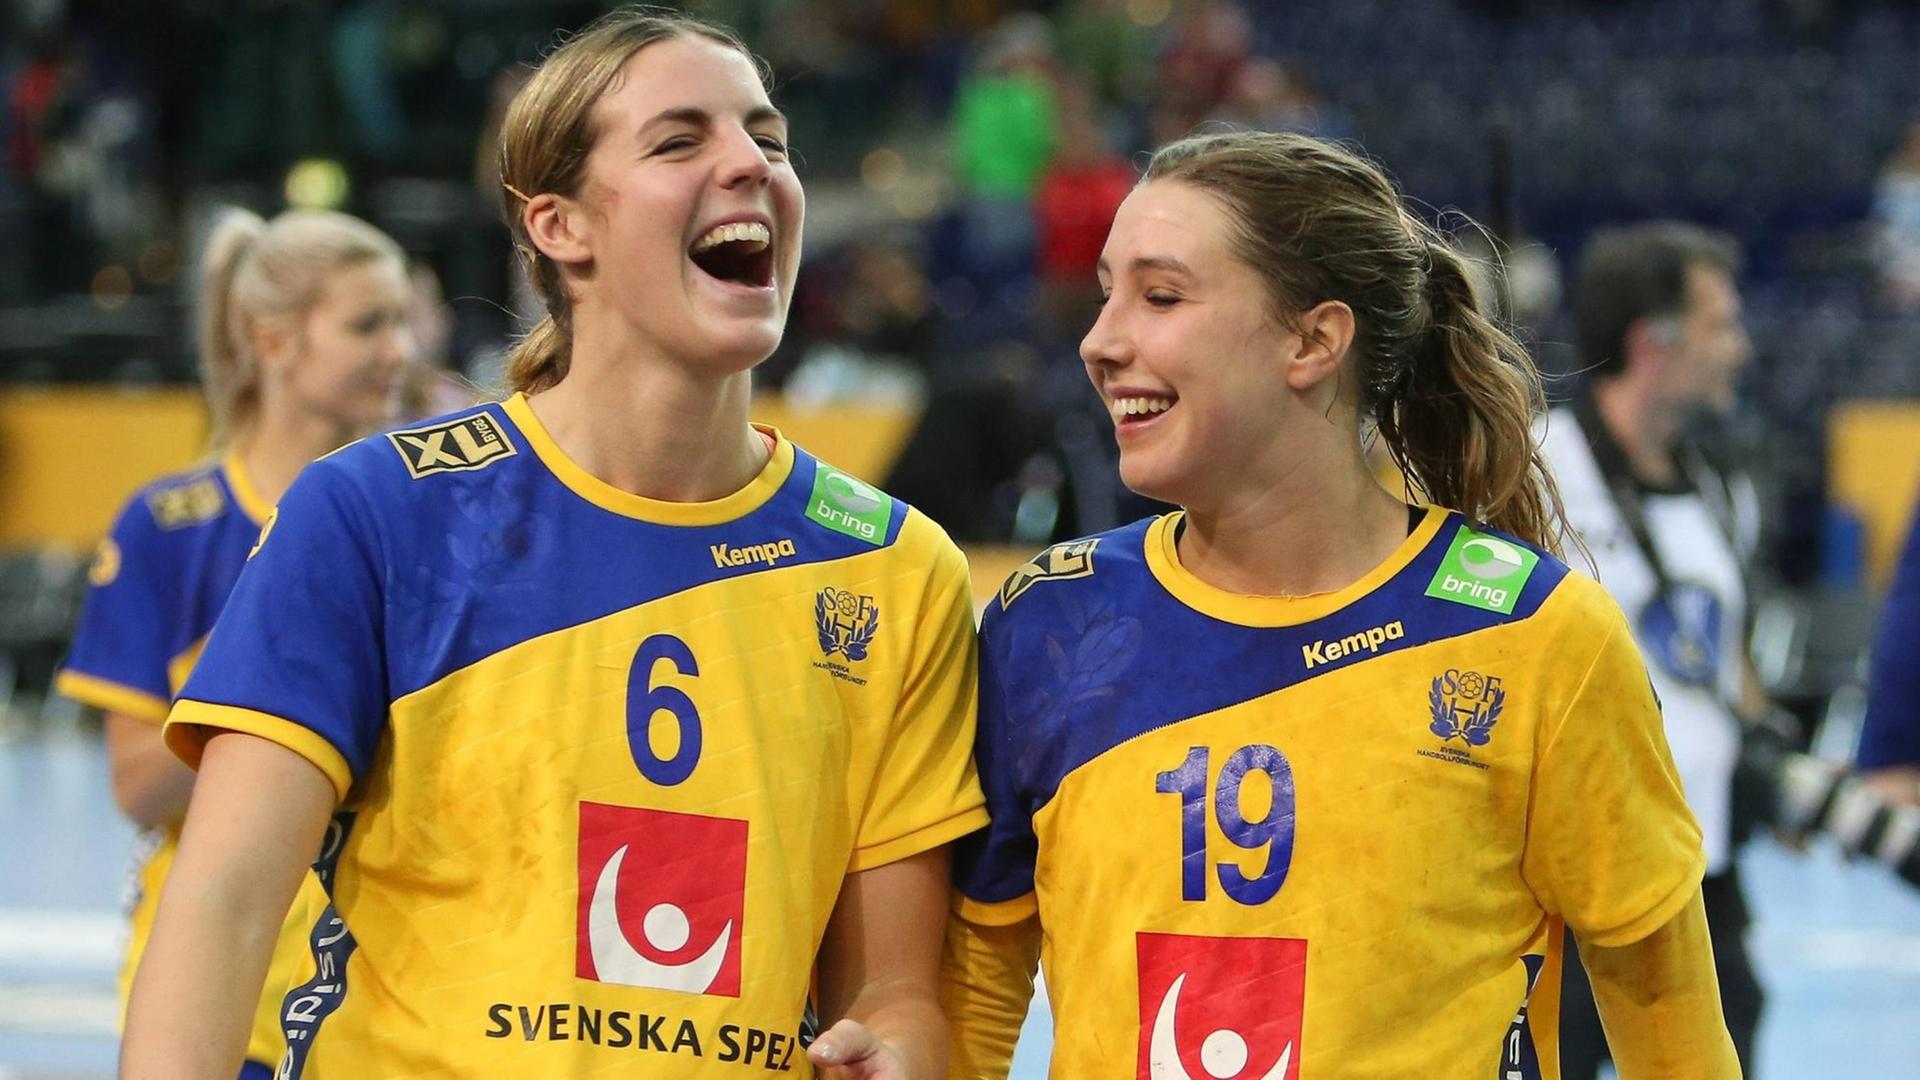 Frauensport in Skandinavien